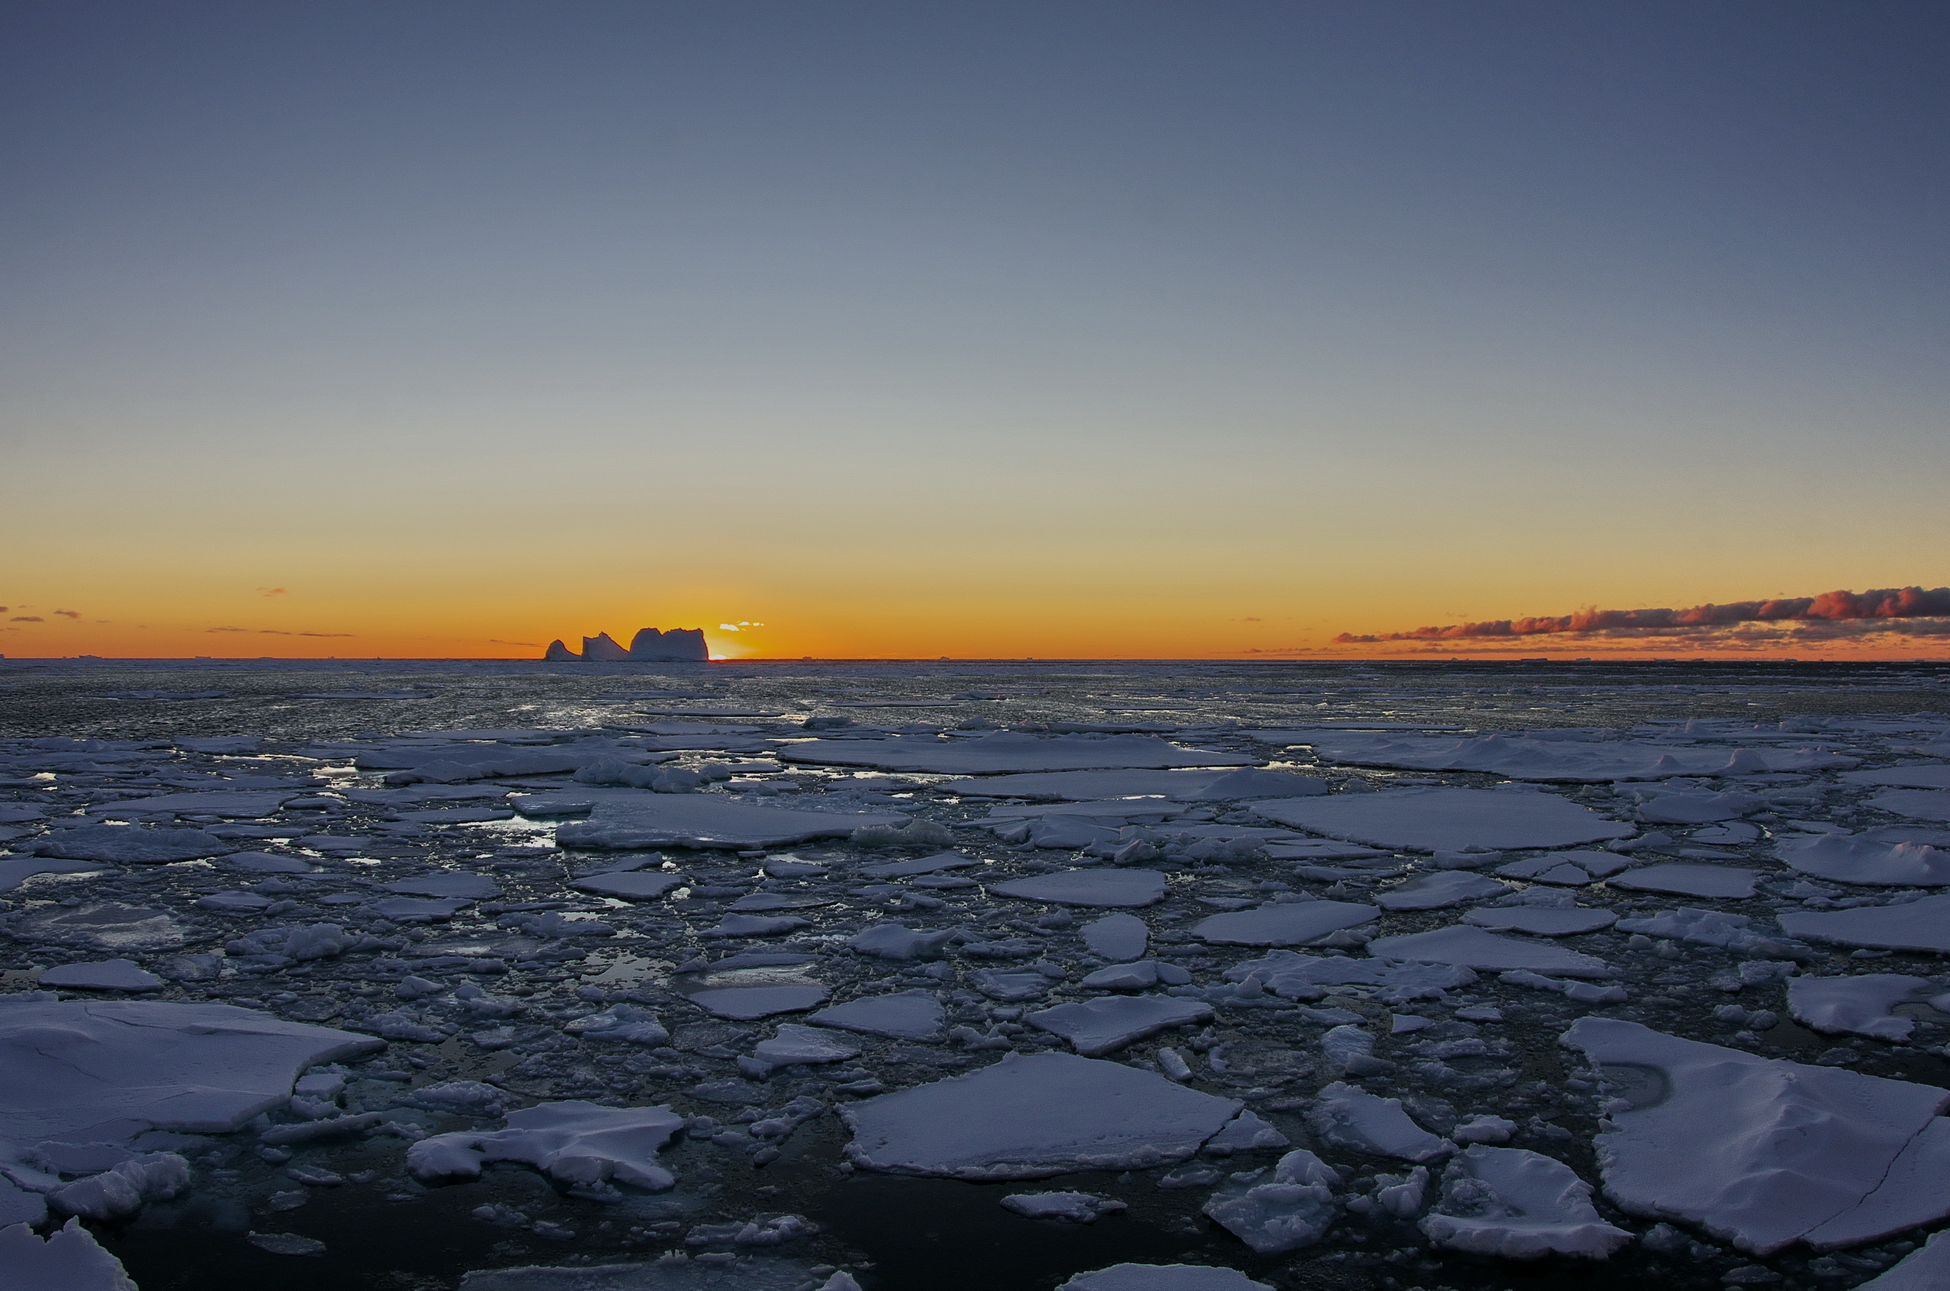 Арктика сегодня. В новой Морской доктрине России видное место отведено Арктике